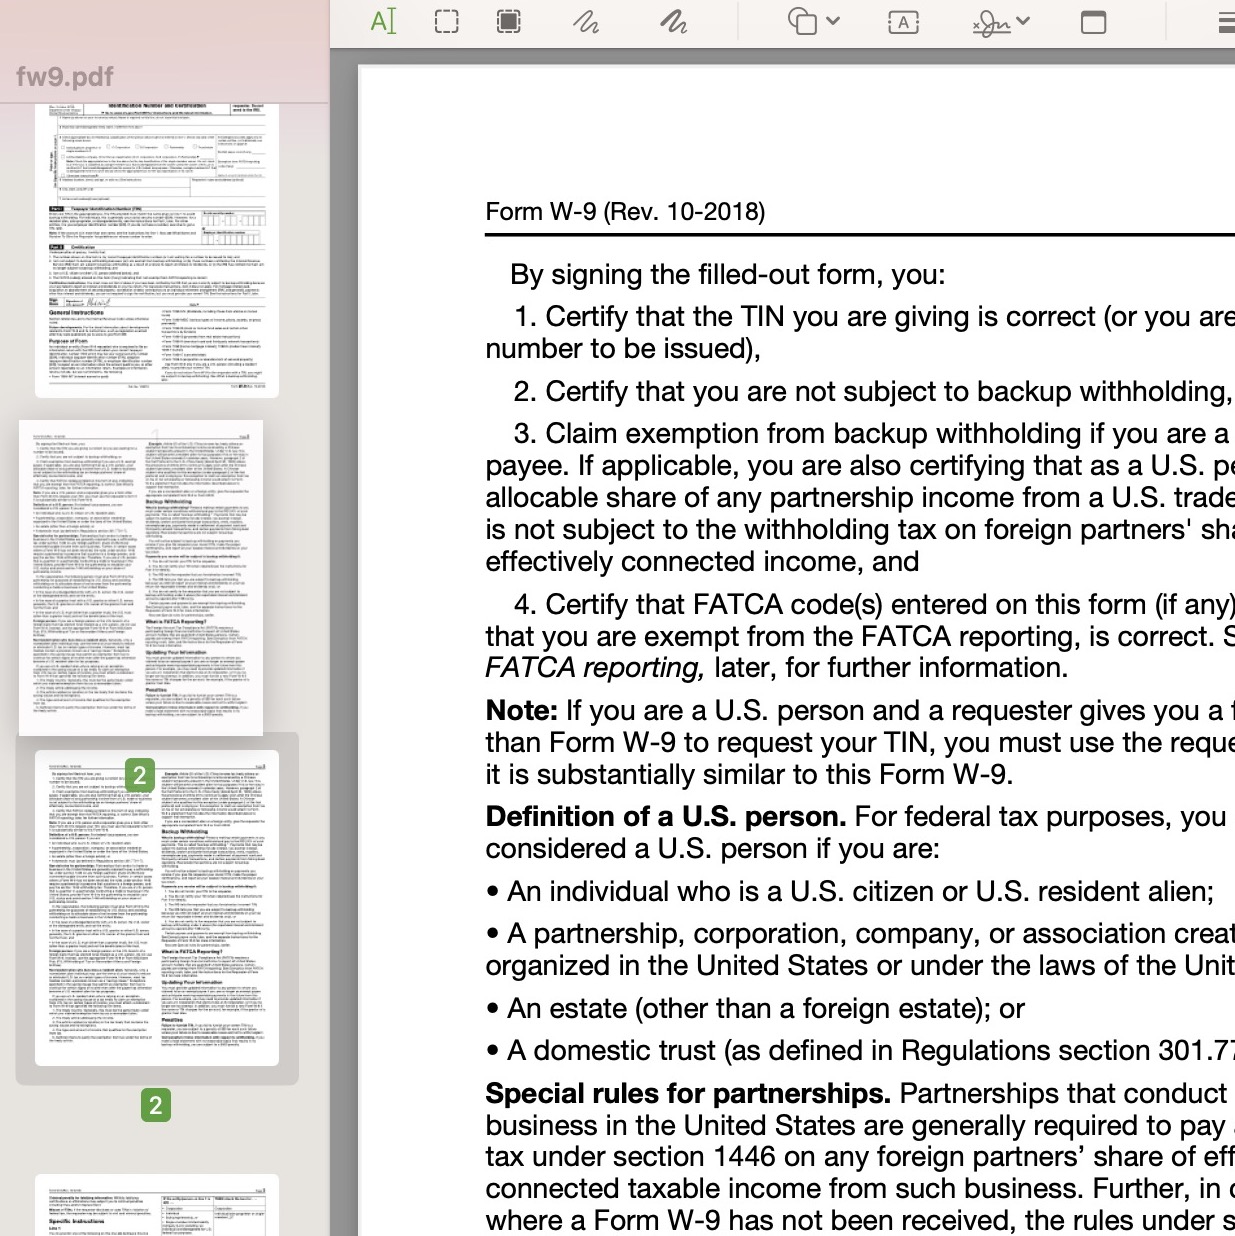 mac preview pdf rearrange pages